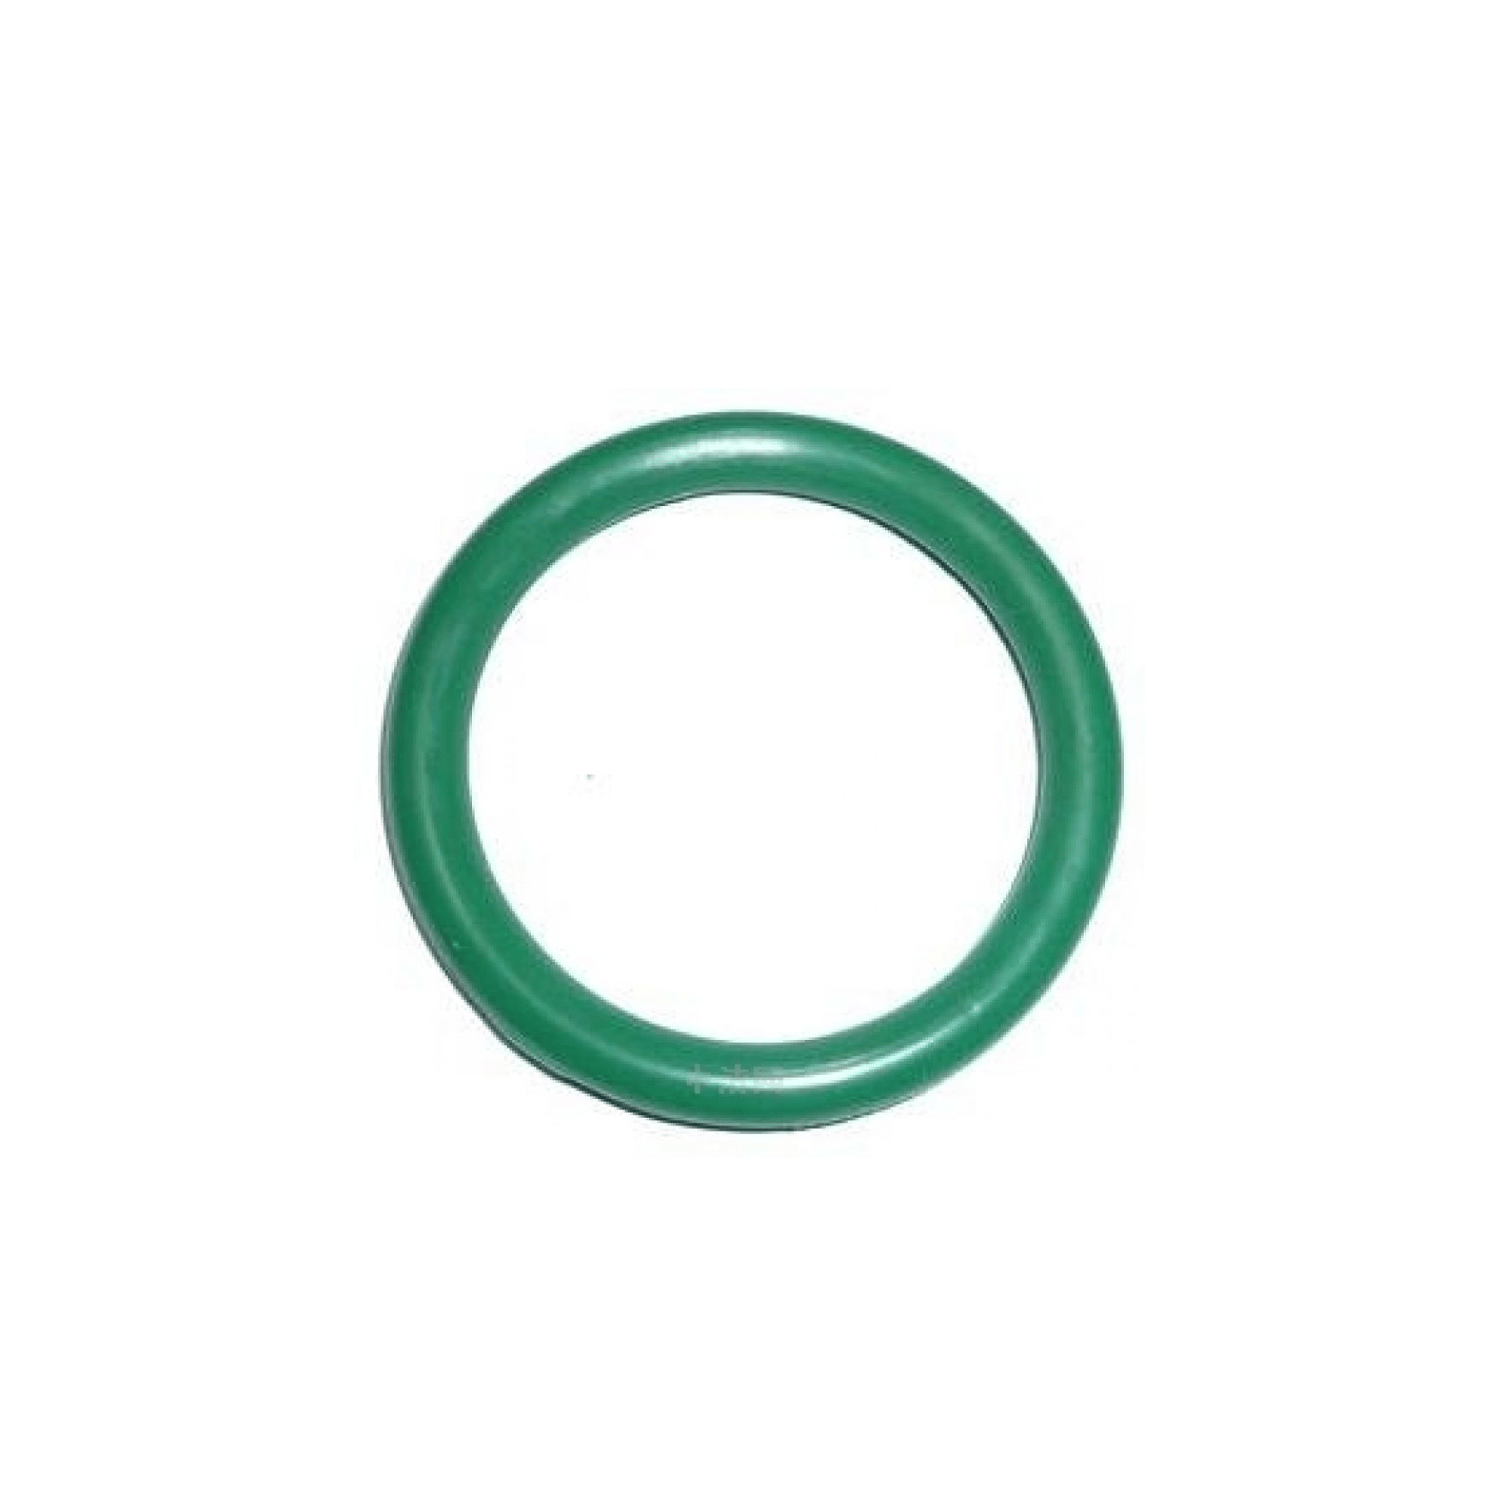 O-ring 13,9 x 1,8 mm 1 pz. in gomma HNBR, per impianti di climatizzazione R12 e R134a